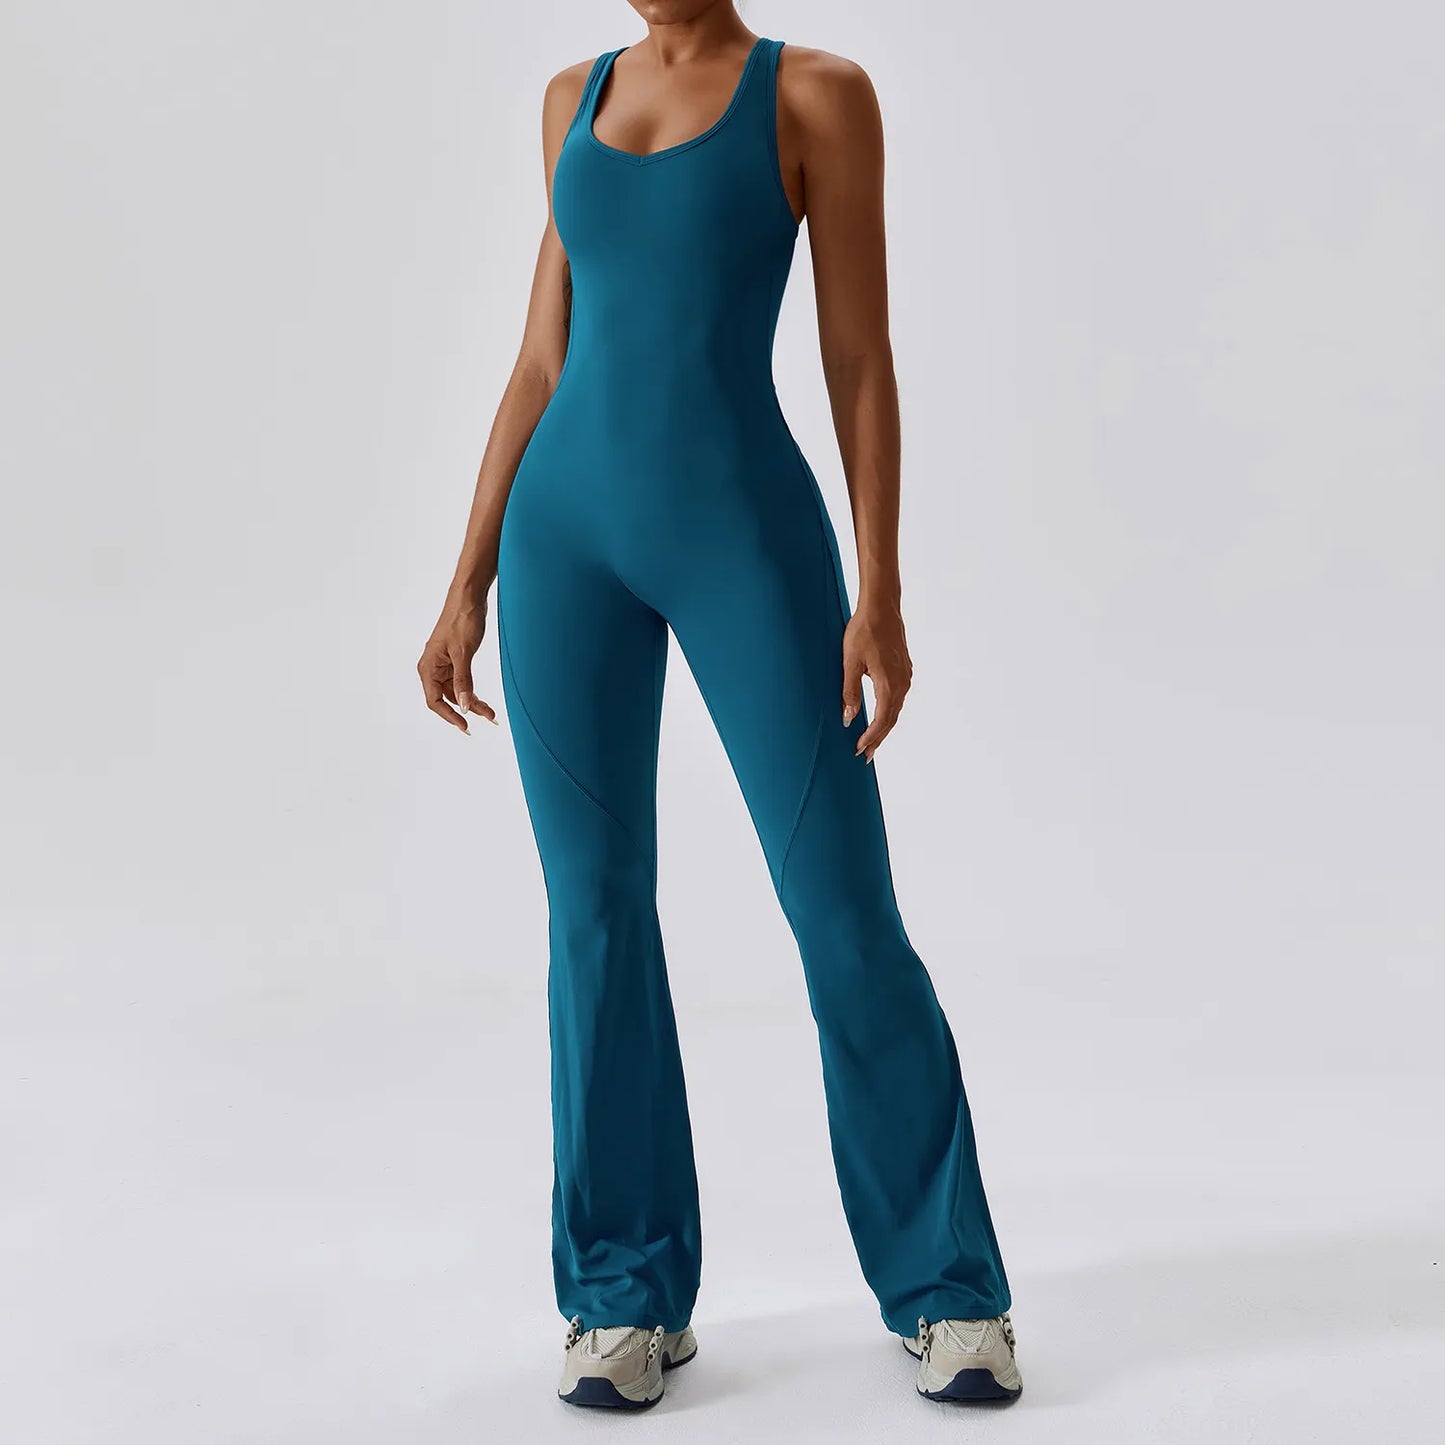 TEEK - Free Feeling Stretch Bodysuit JUMPSUIT theteekdotcom Blue S 